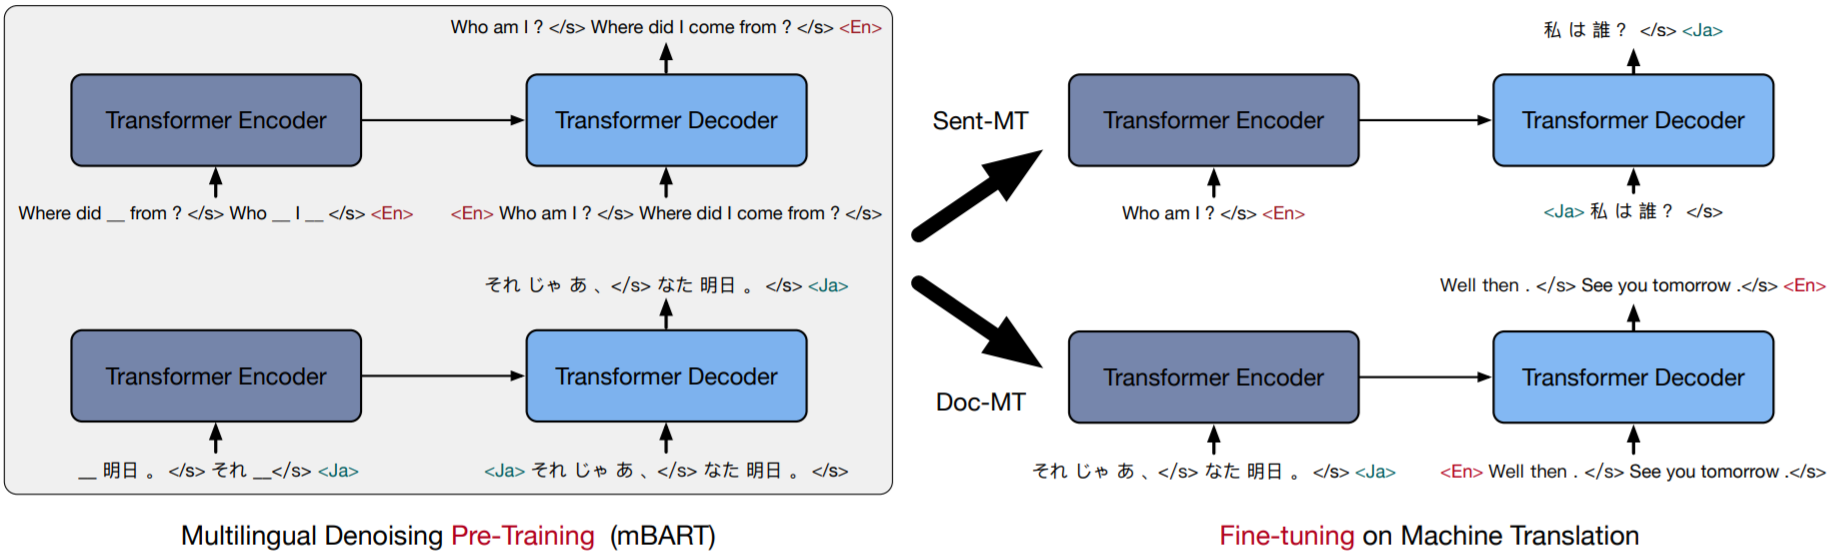 v-cross模型_transformer模型图「建议收藏」